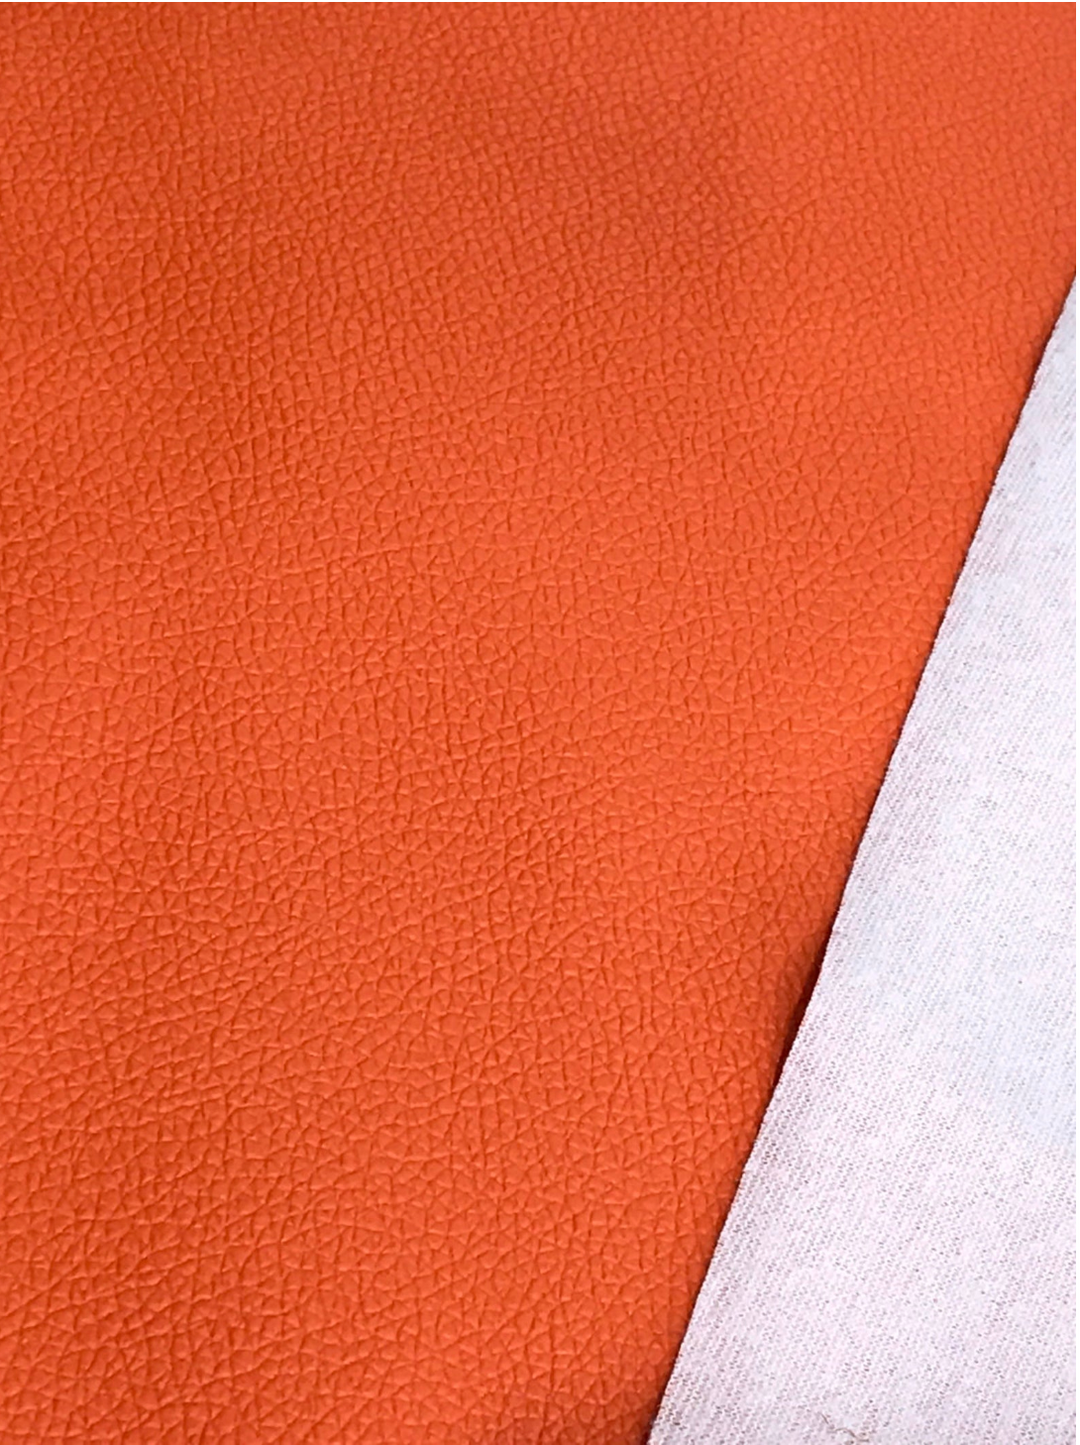 Feuille de similicuir orange 0,7 mm mince A4 - 8X11 ou A5 Taille Petit Litchi Imprimé Orange Faux Cuir Tissu Orange PU Cuir Mince Similicuir